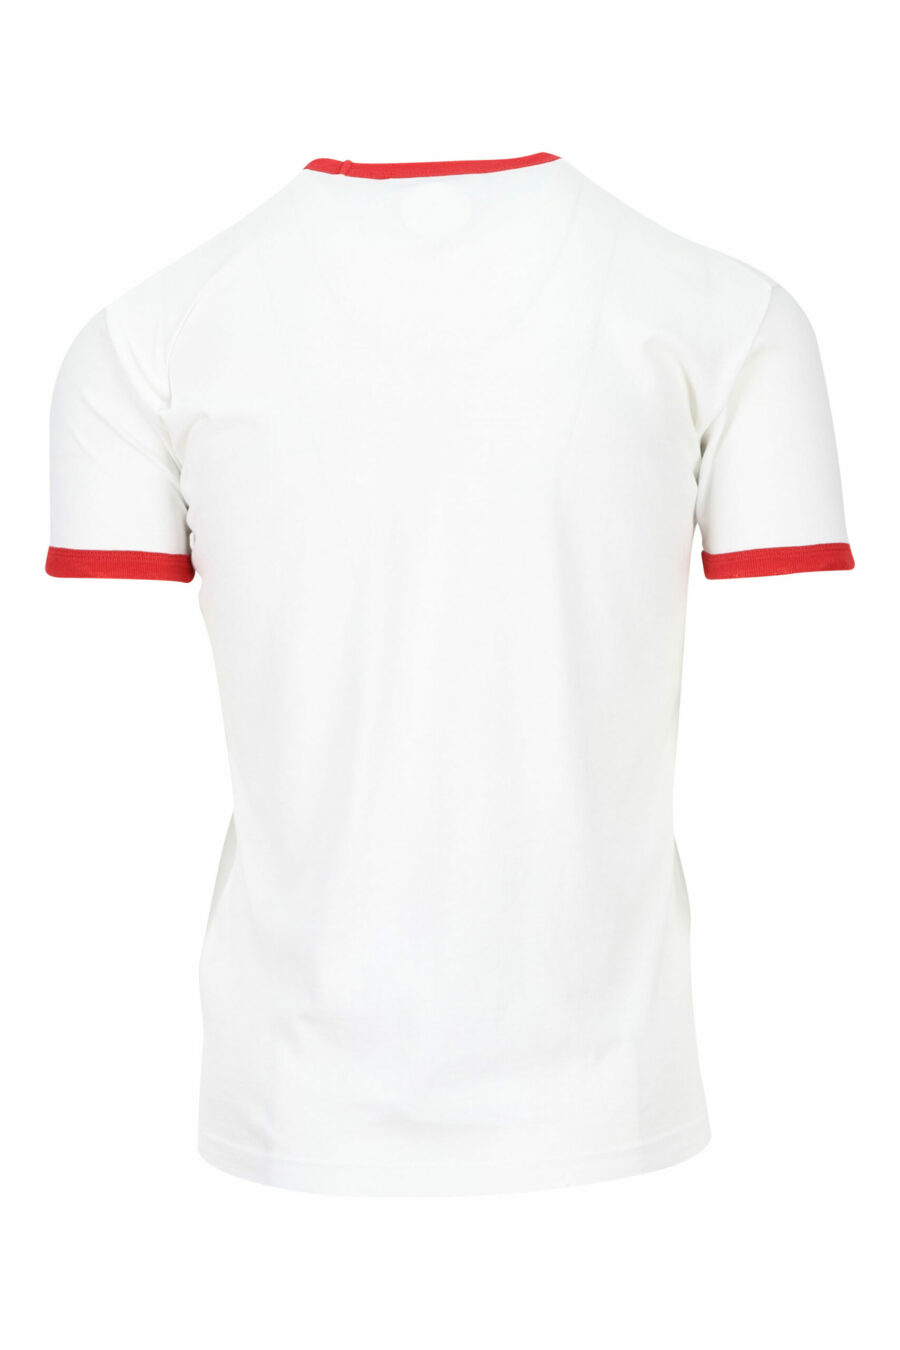 T-shirt blanc avec détails rouges et impression de feuilles - 8054148150792 1 scaled